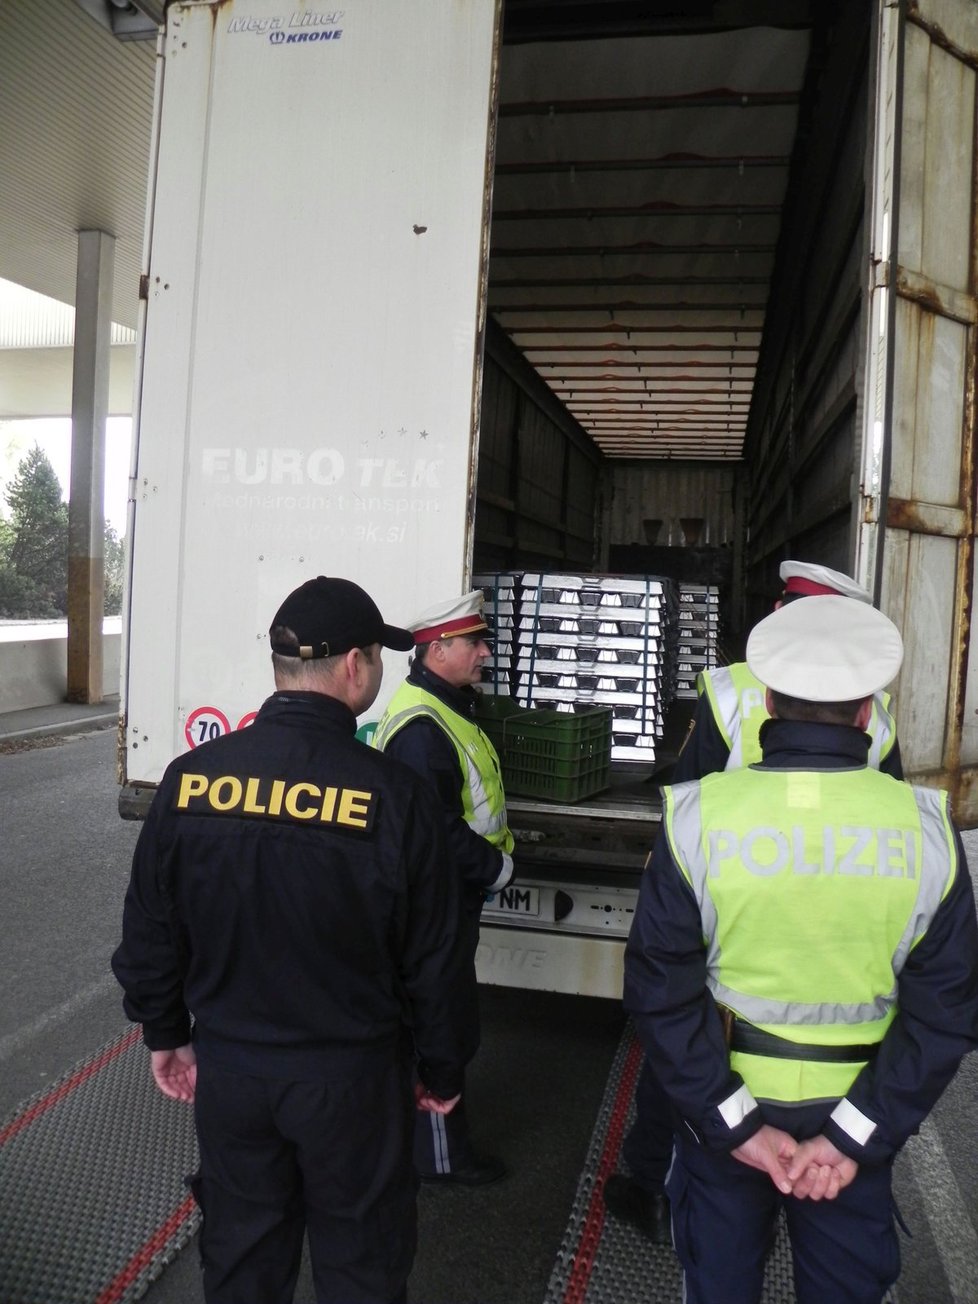 Společné česko-rakouské policejní hlídky zkontrolovaly na někdejším hraničním přechodu během dopoledne desítky aut včetně tohoto slovinského kamionu.